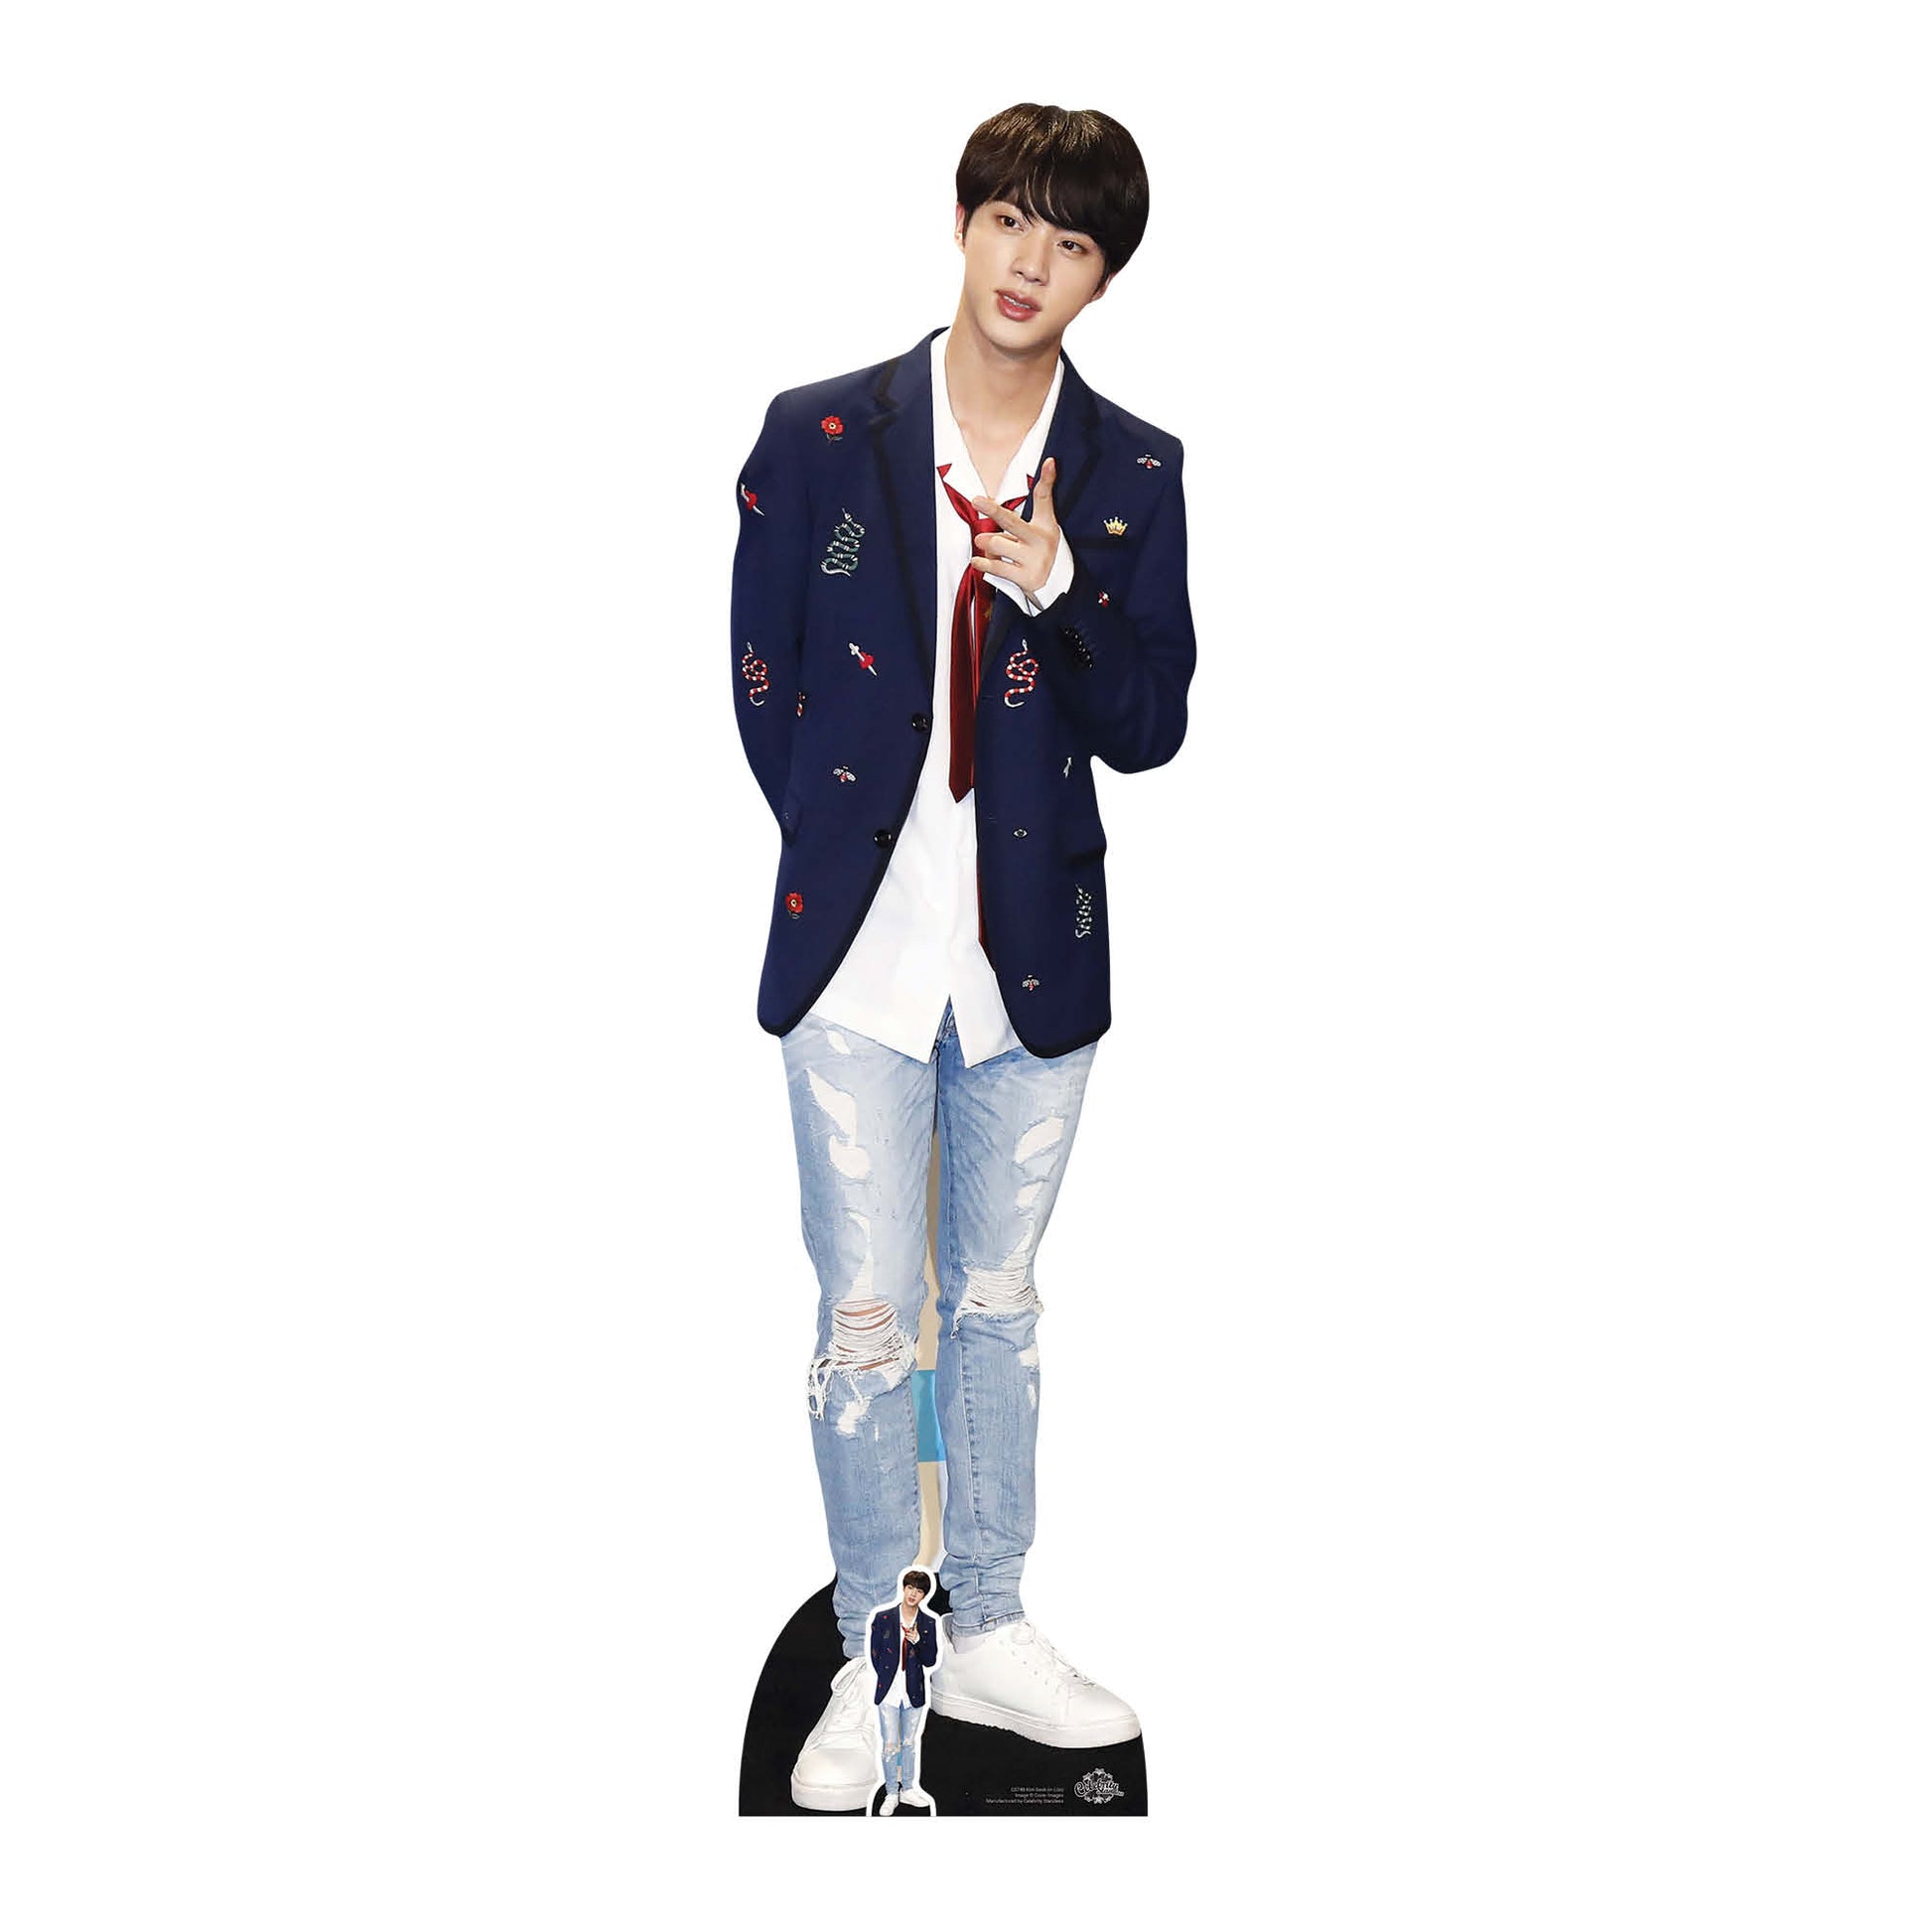 Kim Seok-jin BTS JIN Cardboard Cutout MyCardboardCutout